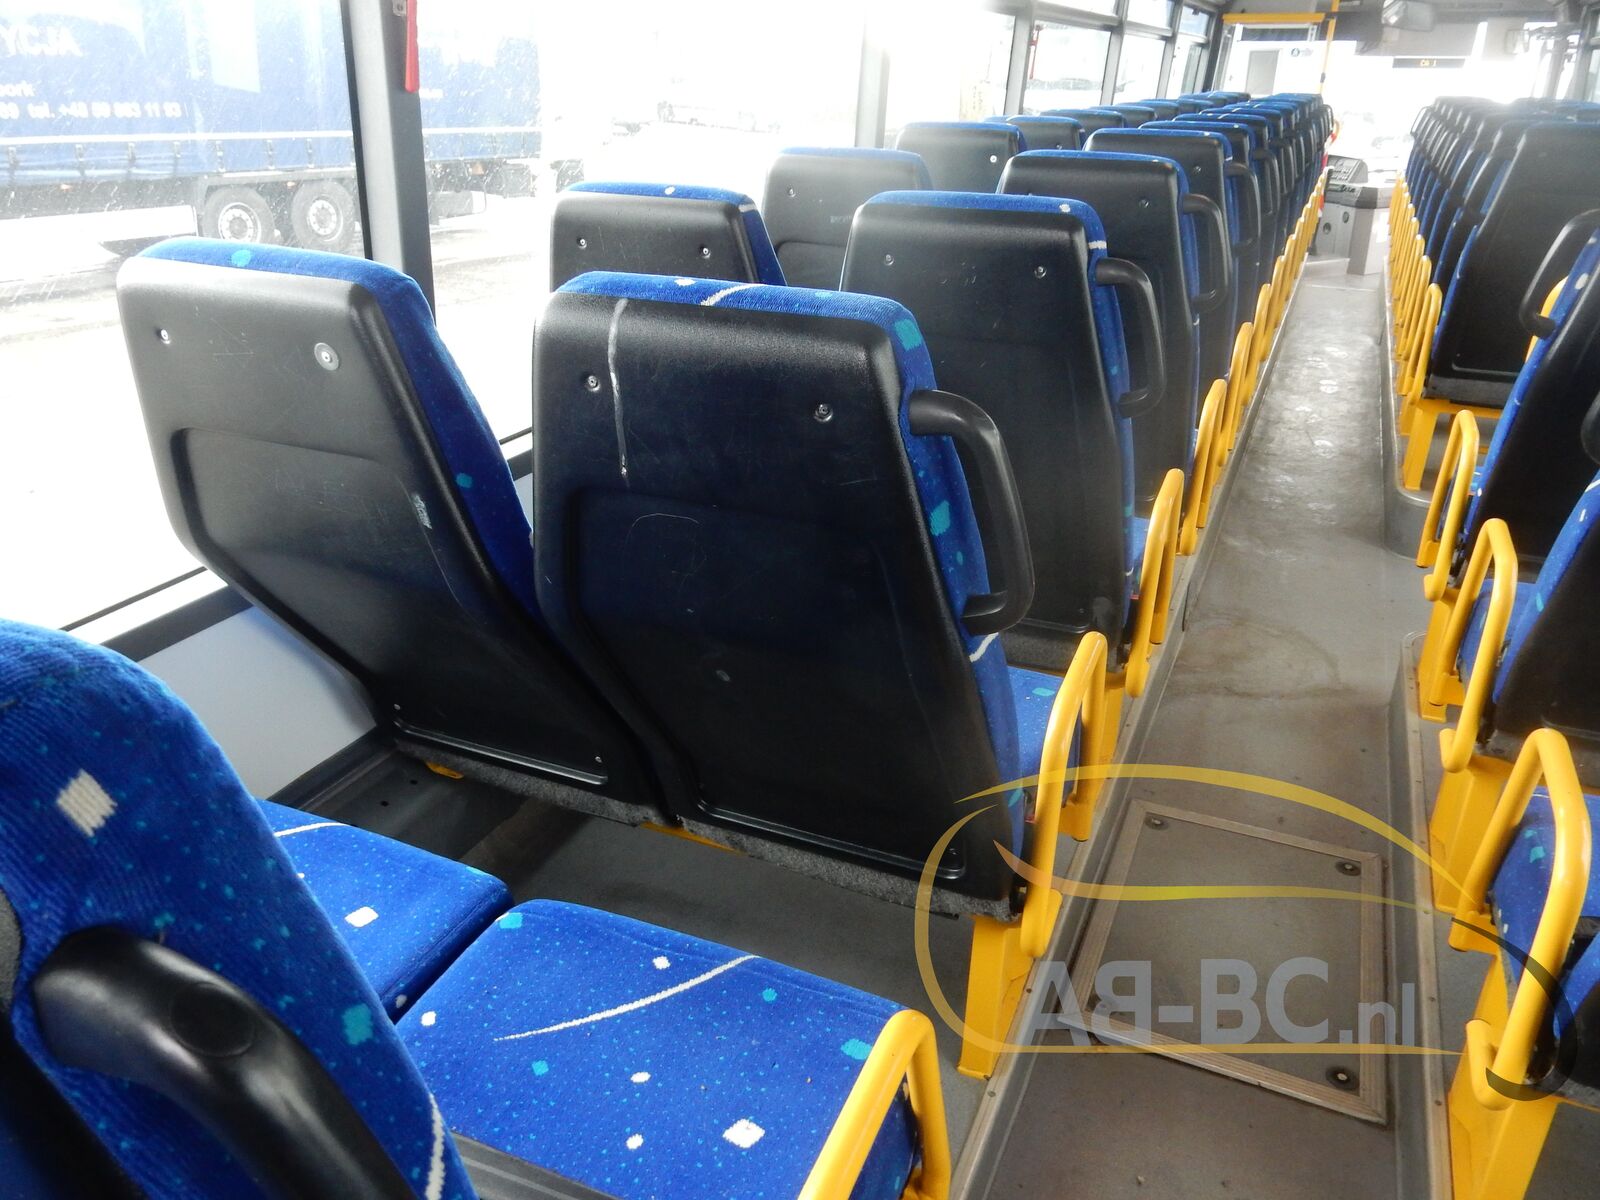 interurban-bus-IVECO-Irisbus-Recreo-64-Seats---1634818704399271590_orig_27addb8fe4f65dc29b9a76aa786a2d21--21102115152205689900